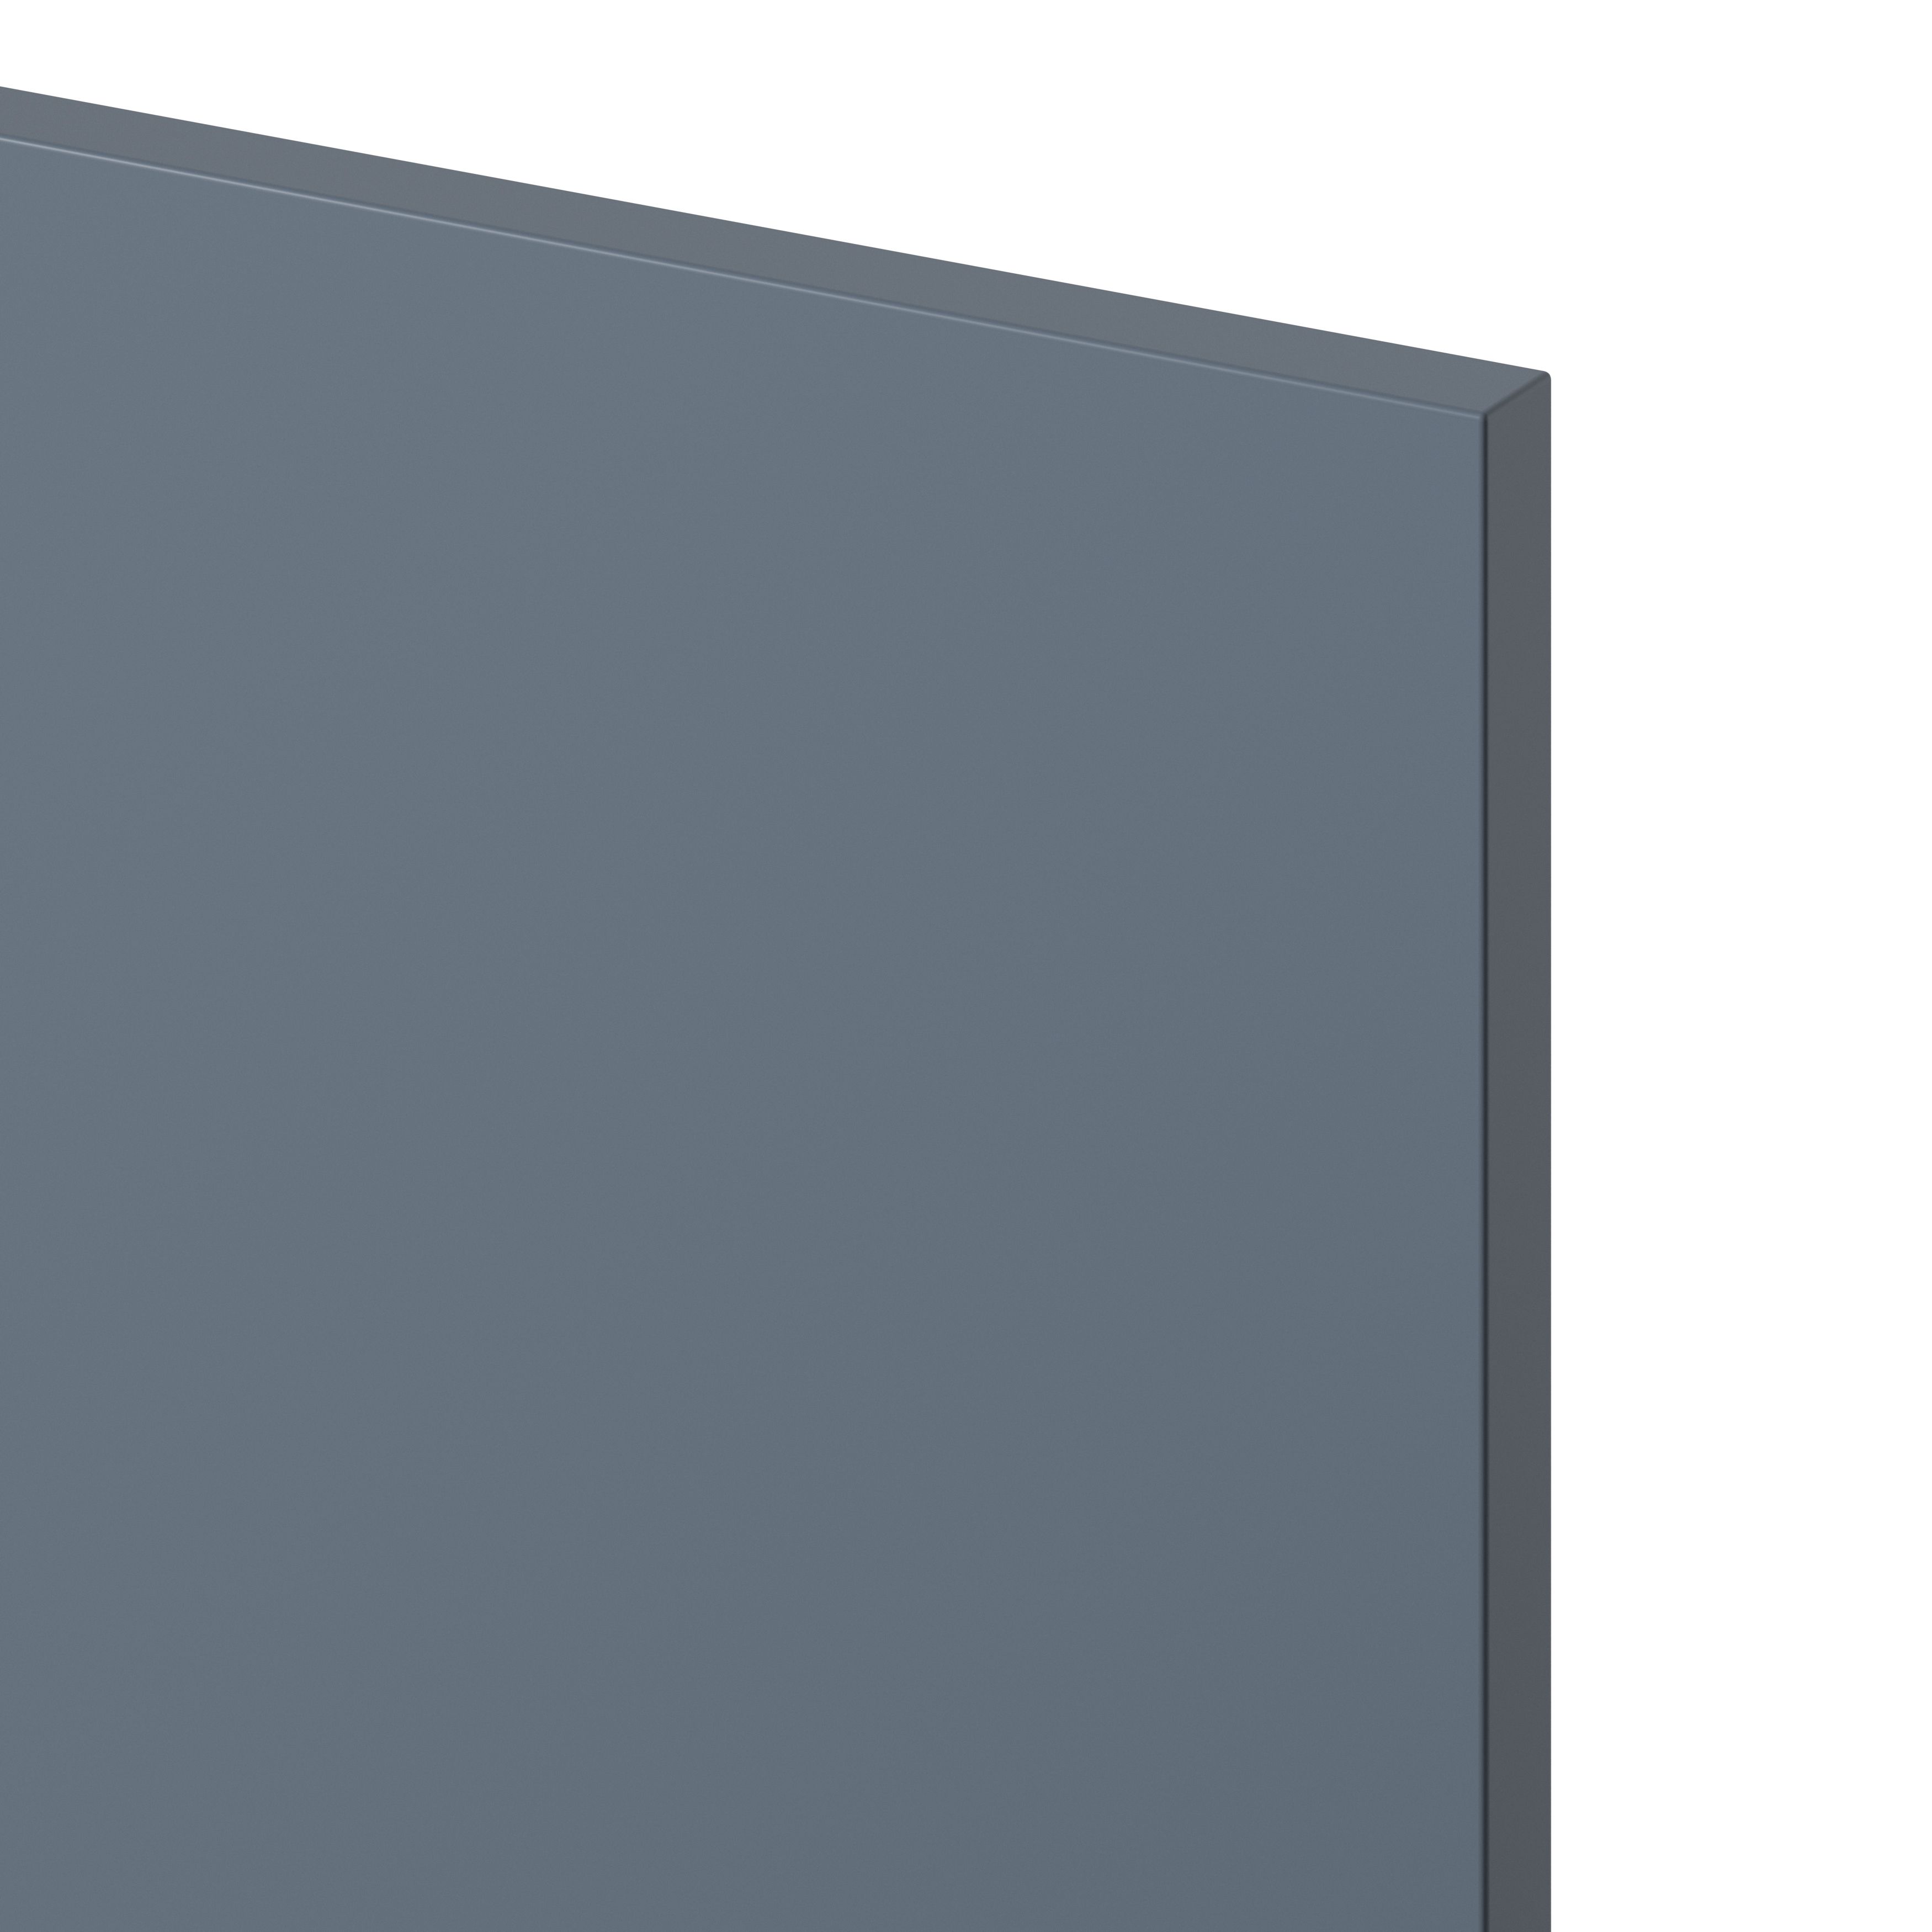 GoodHome Alisma Matt blue Drawer front, bridging door & bi fold door, (W)800mm (H)356mm (T)18mm